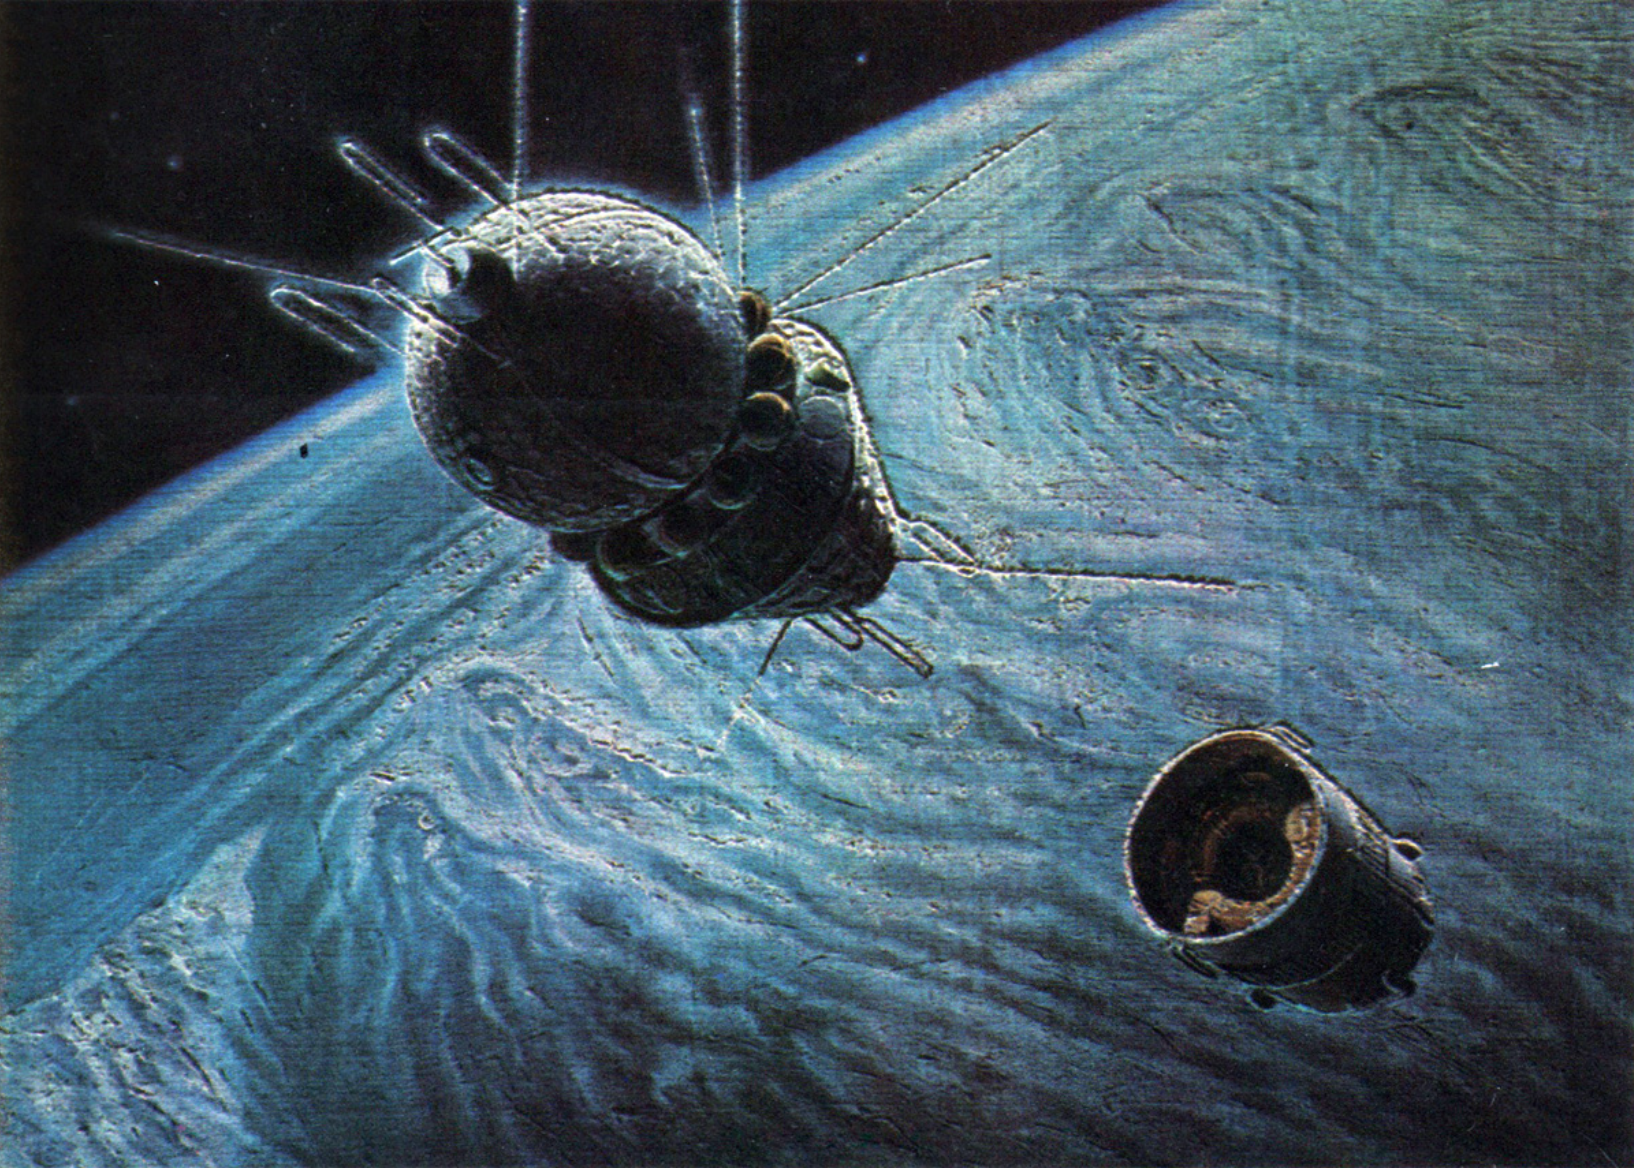 Первый полет гагарина вокруг земли. Космический корабль Гагарина Восток 1. А.Леонов, а.Соколов "на спутнике Юпитера". Космический корабль Восток картина Леонов.